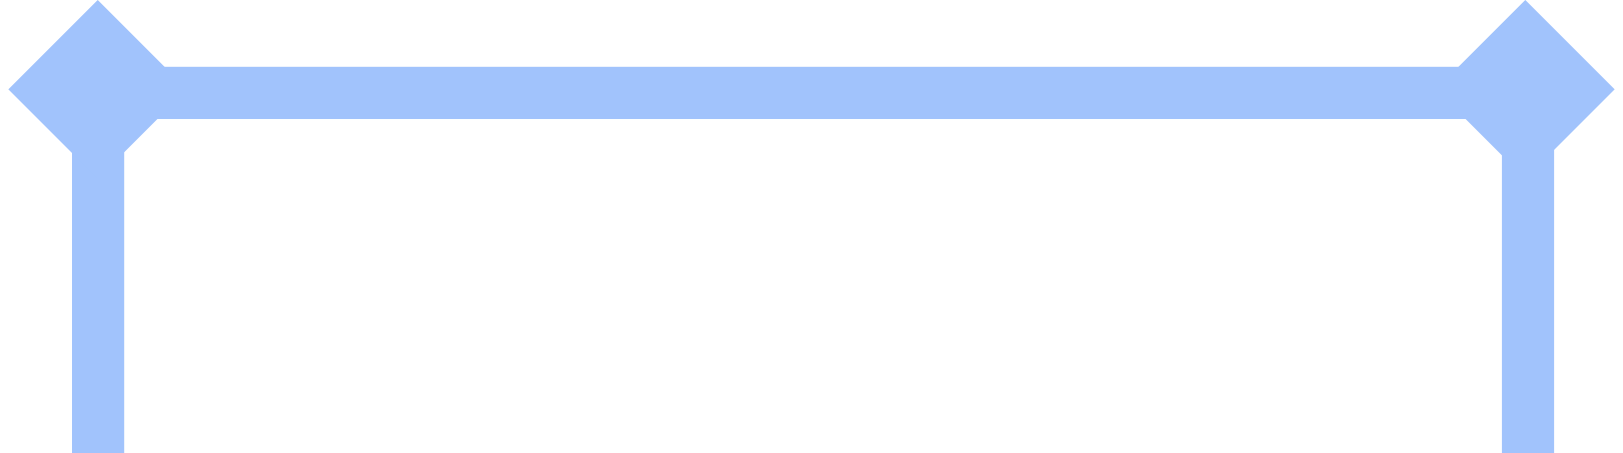 Illustration Base de tube à essai aux formats PNG, SVG